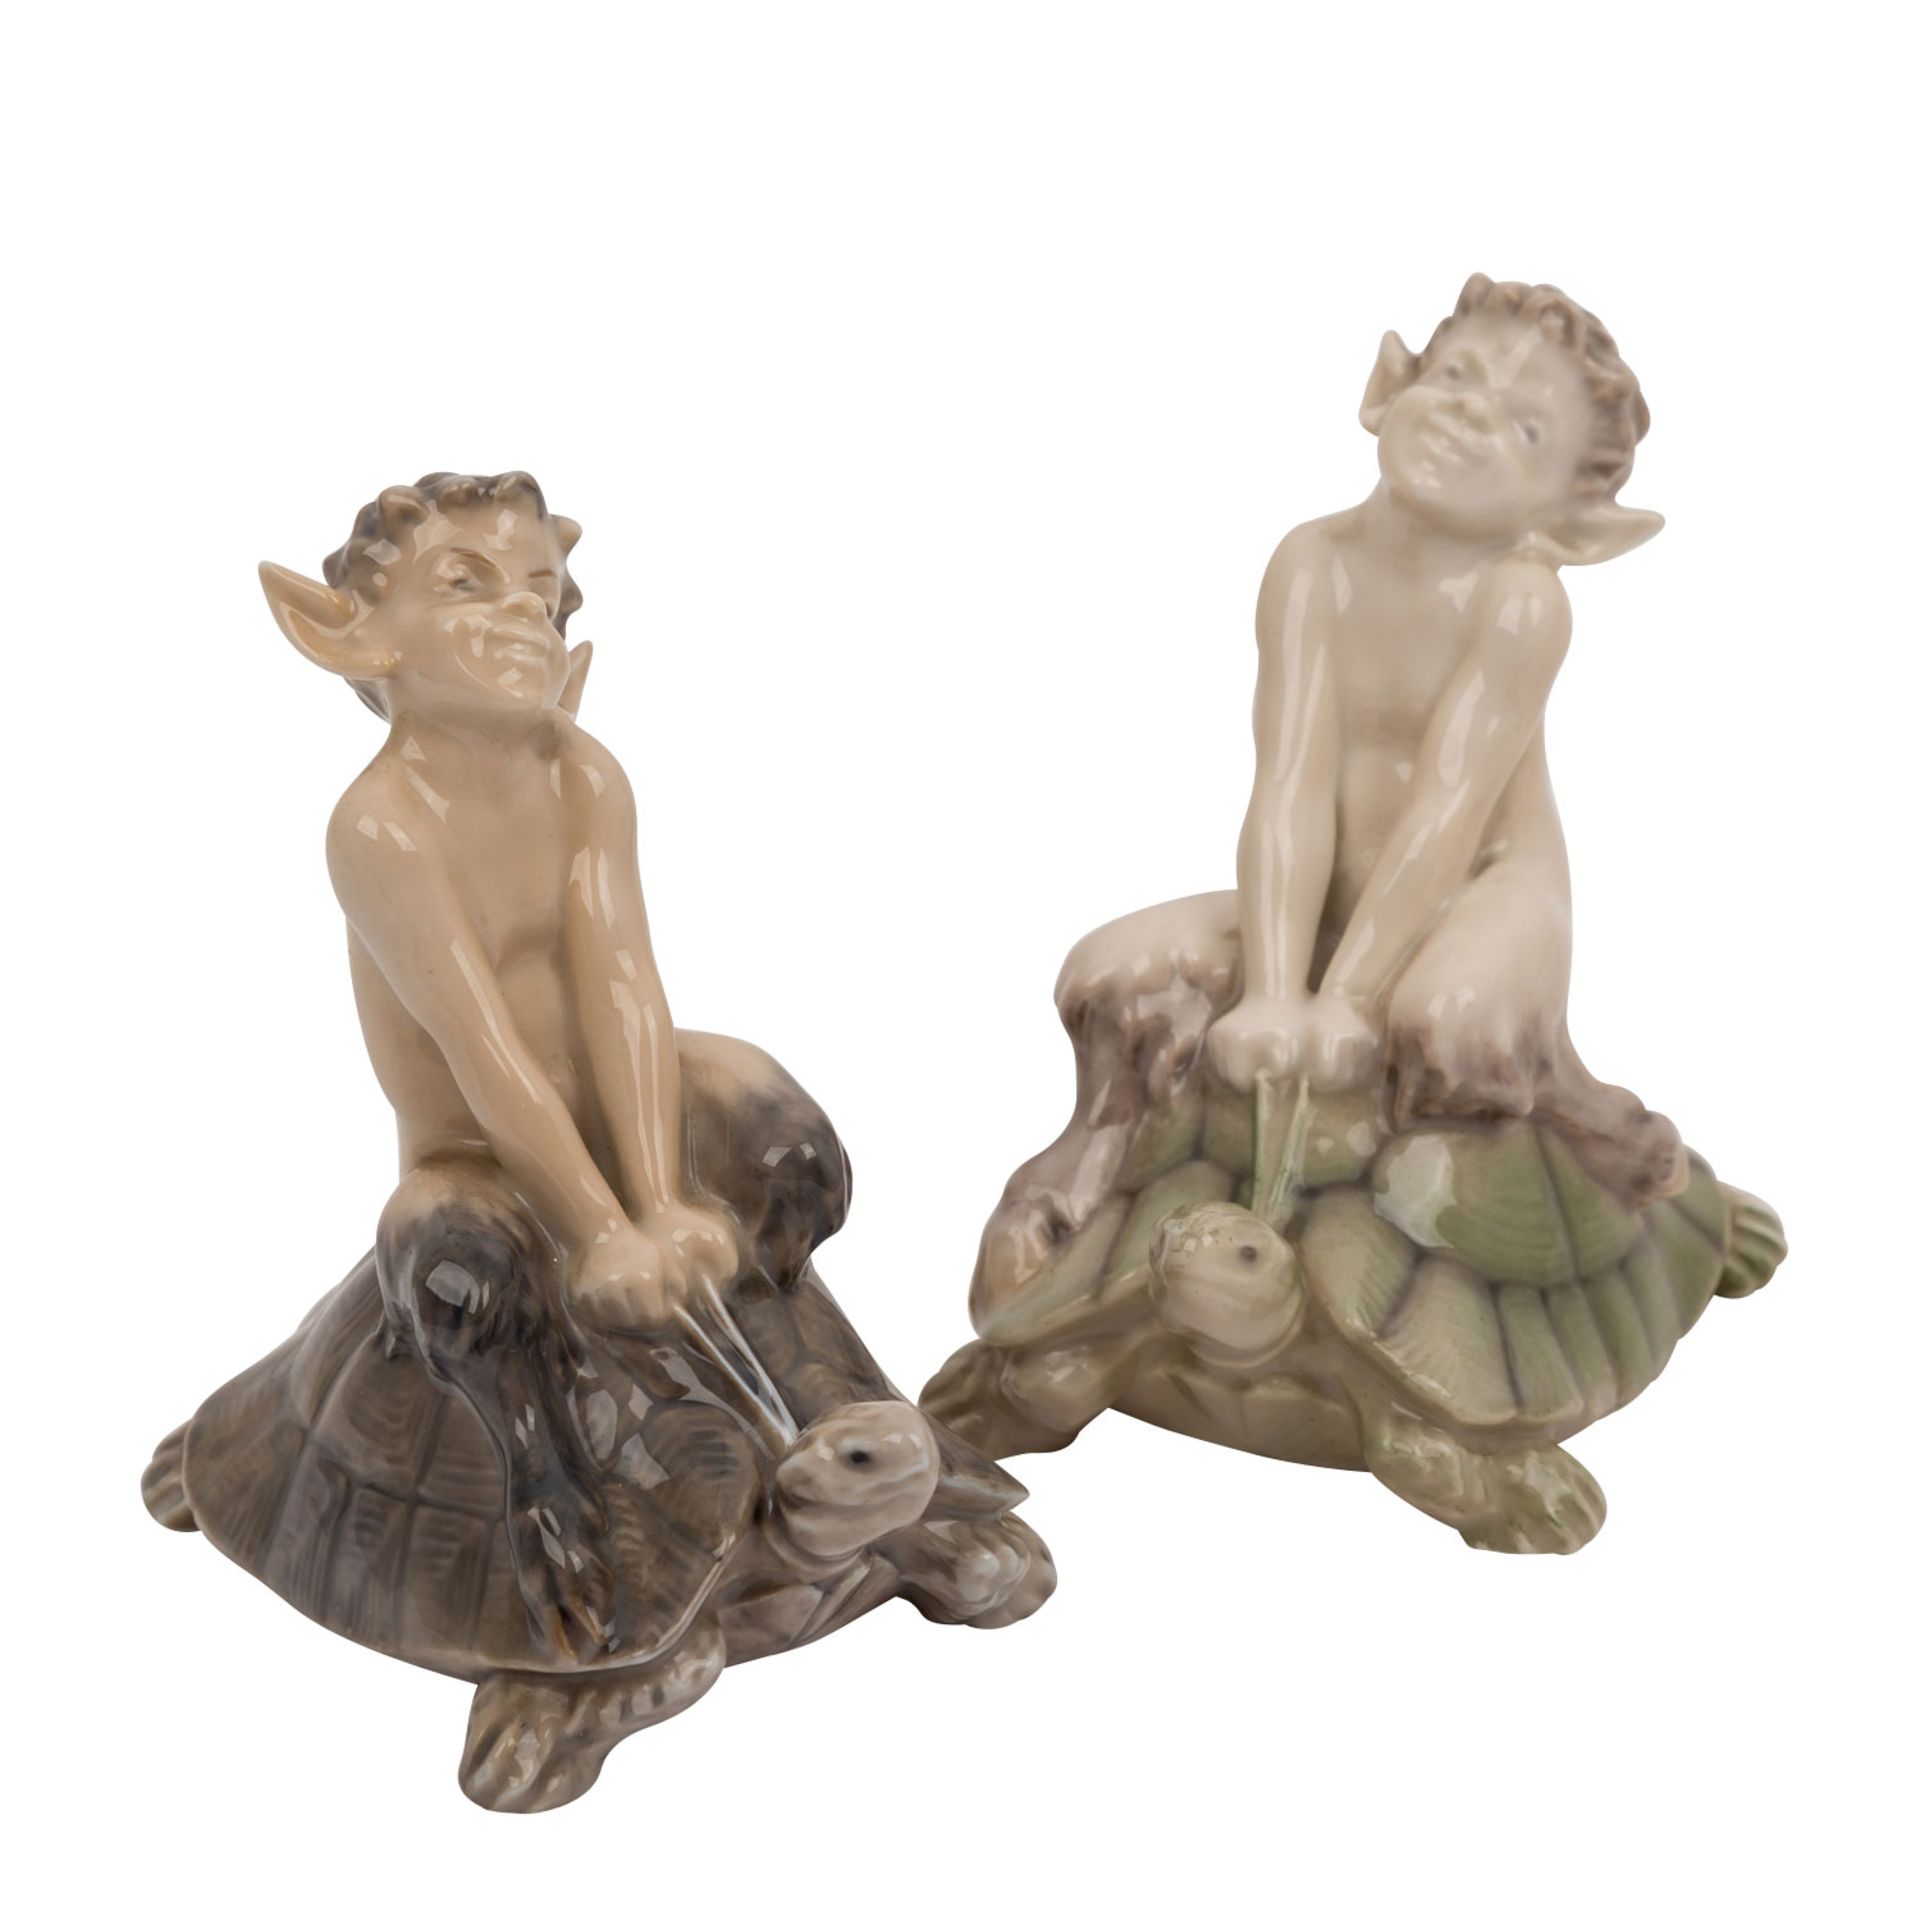 ROYAL COPENHAGEN, zwei Porzellanfiguren „Faun auf Schildkröte“um 1964, nach Entwurf von Christian